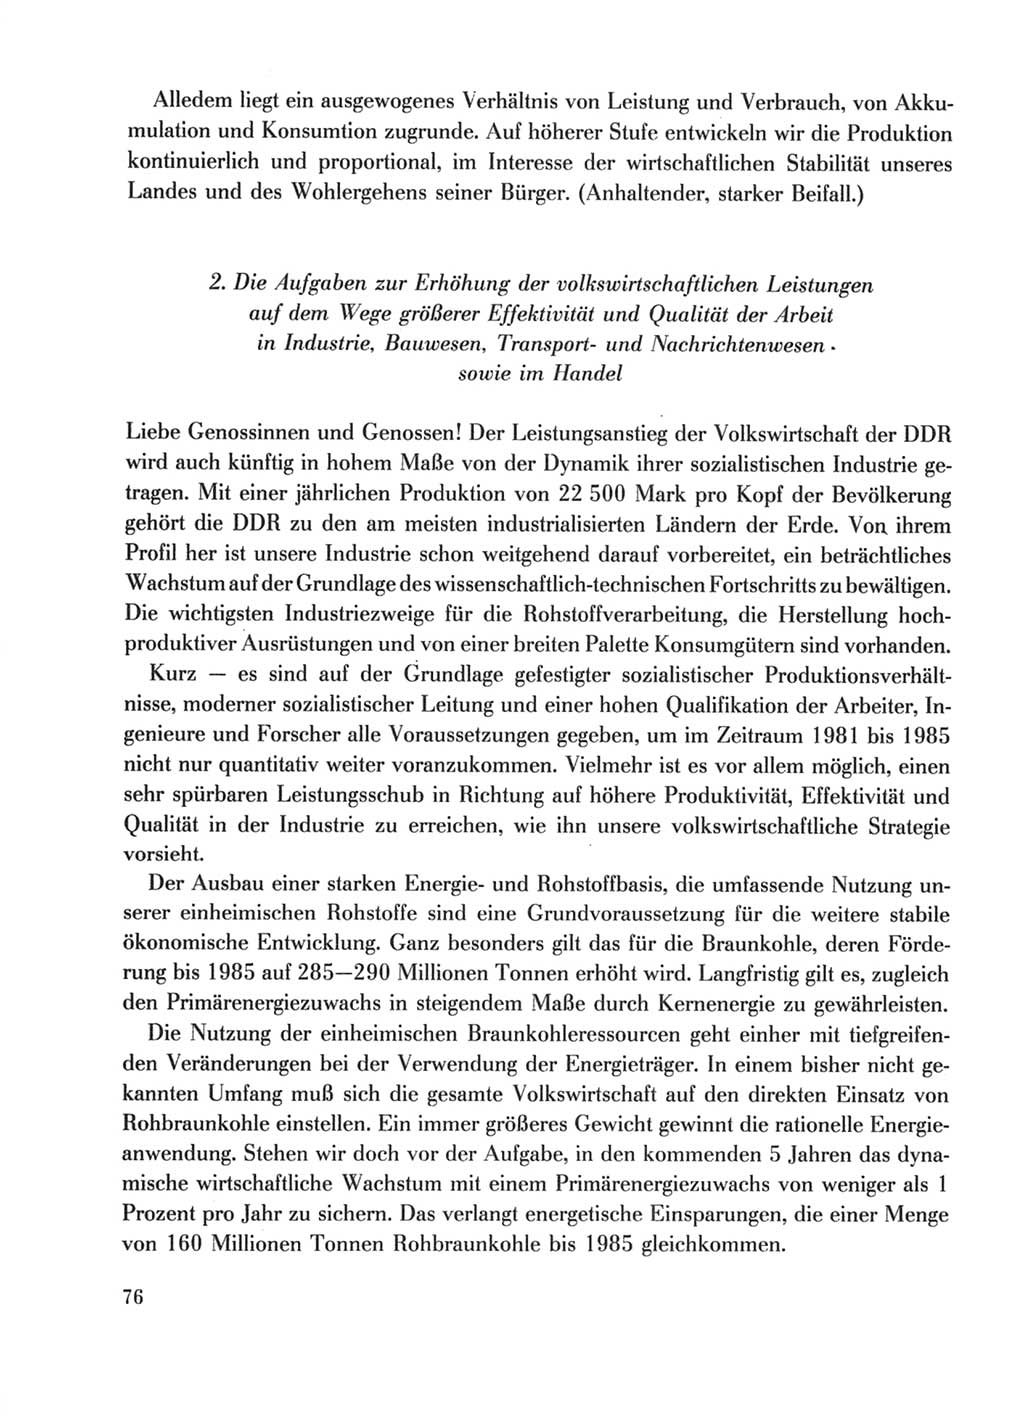 Protokoll der Verhandlungen des Ⅹ. Parteitages der Sozialistischen Einheitspartei Deutschlands (SED) [Deutsche Demokratische Republik (DDR)] 1981, Band 1, Seite 76 (Prot. Verh. Ⅹ. PT SED DDR 1981, Bd. 1, S. 76)